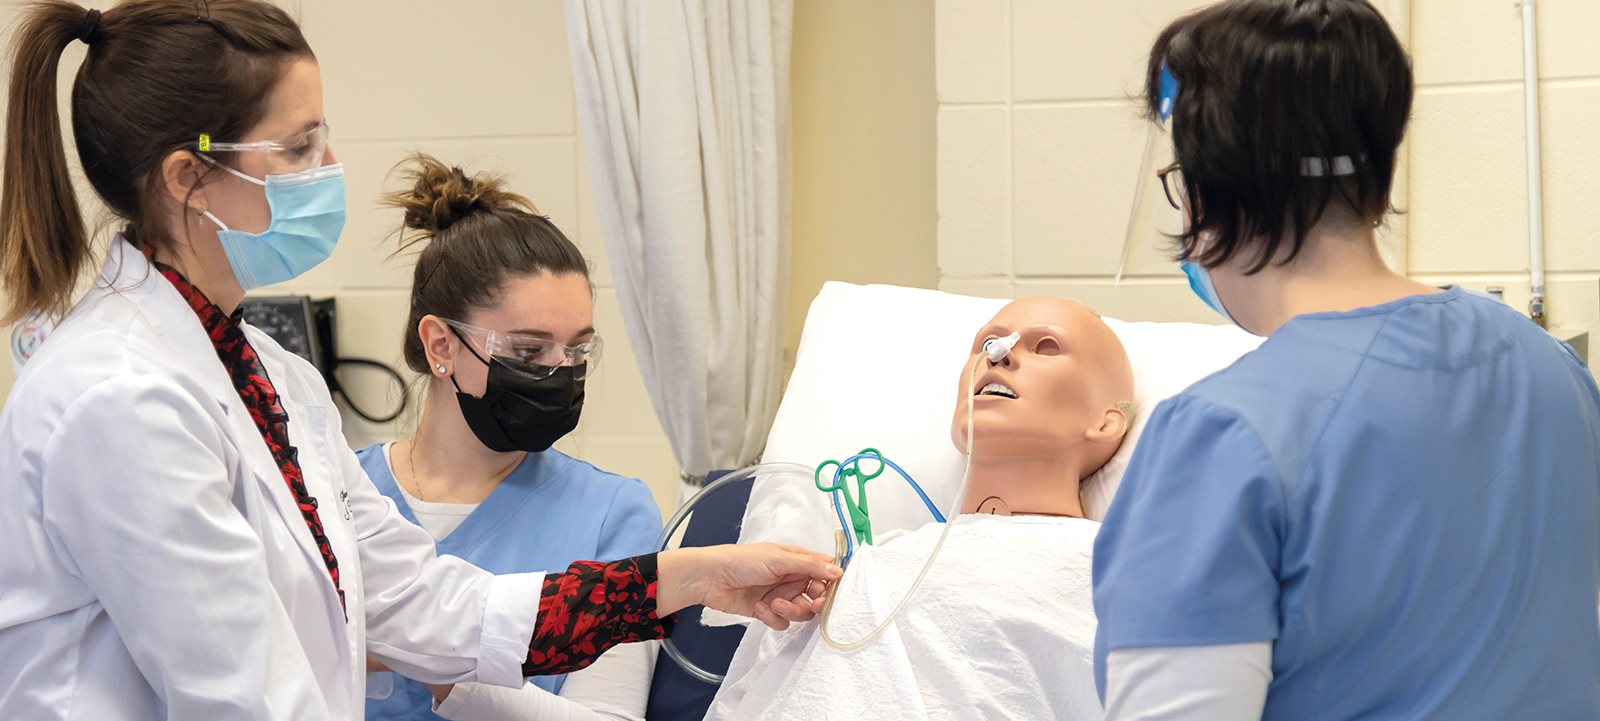 Étudiants en soins infirmiers patients mannequins